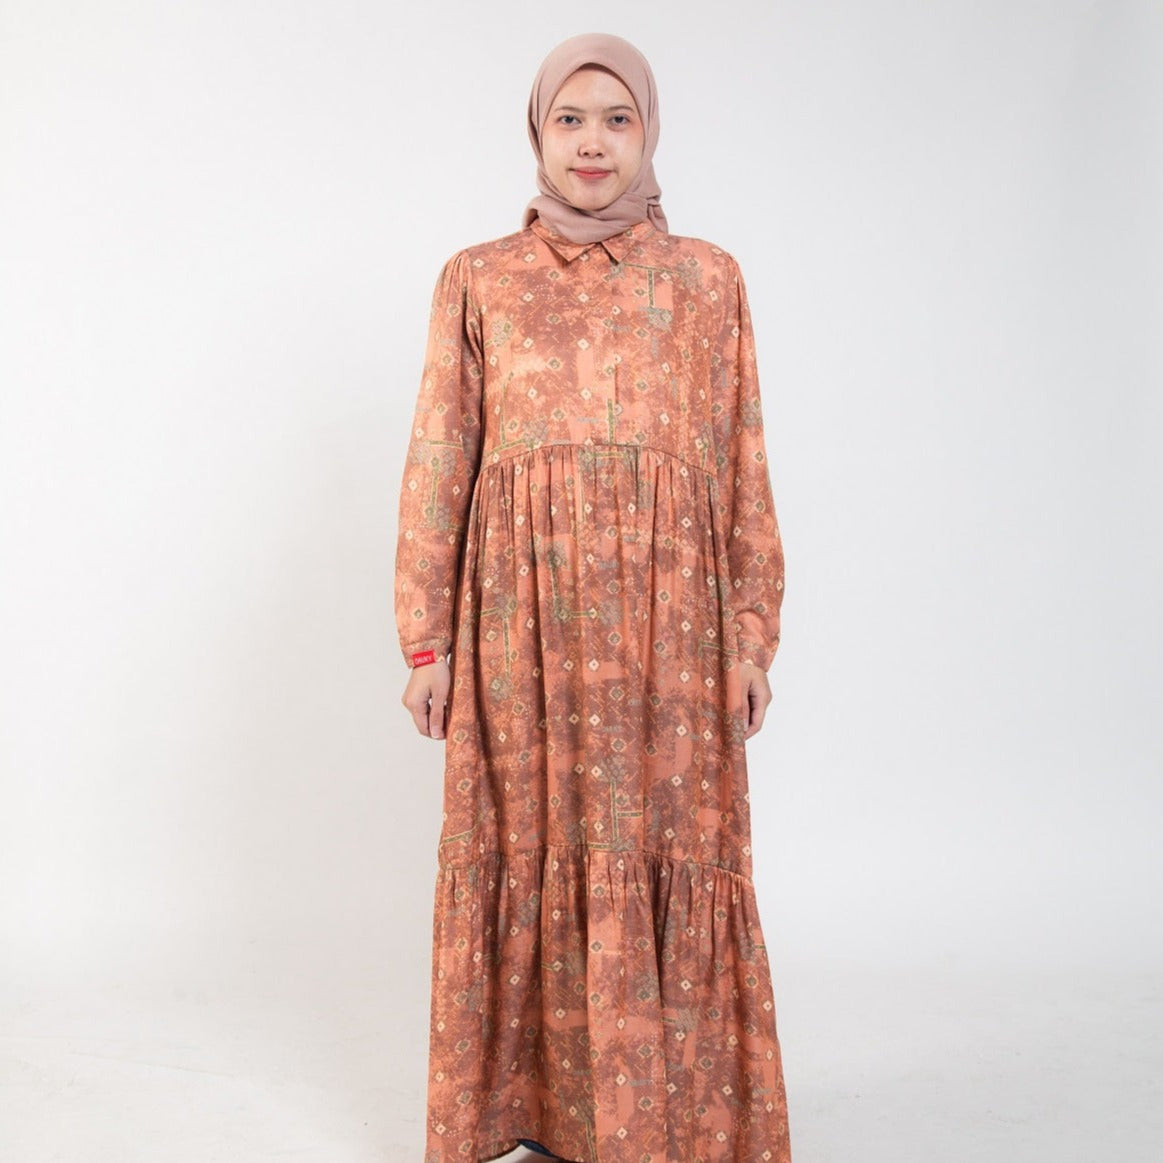 Dress Wanita Muslim Dauky Gamis L Dress Bohe Series - Teracotta